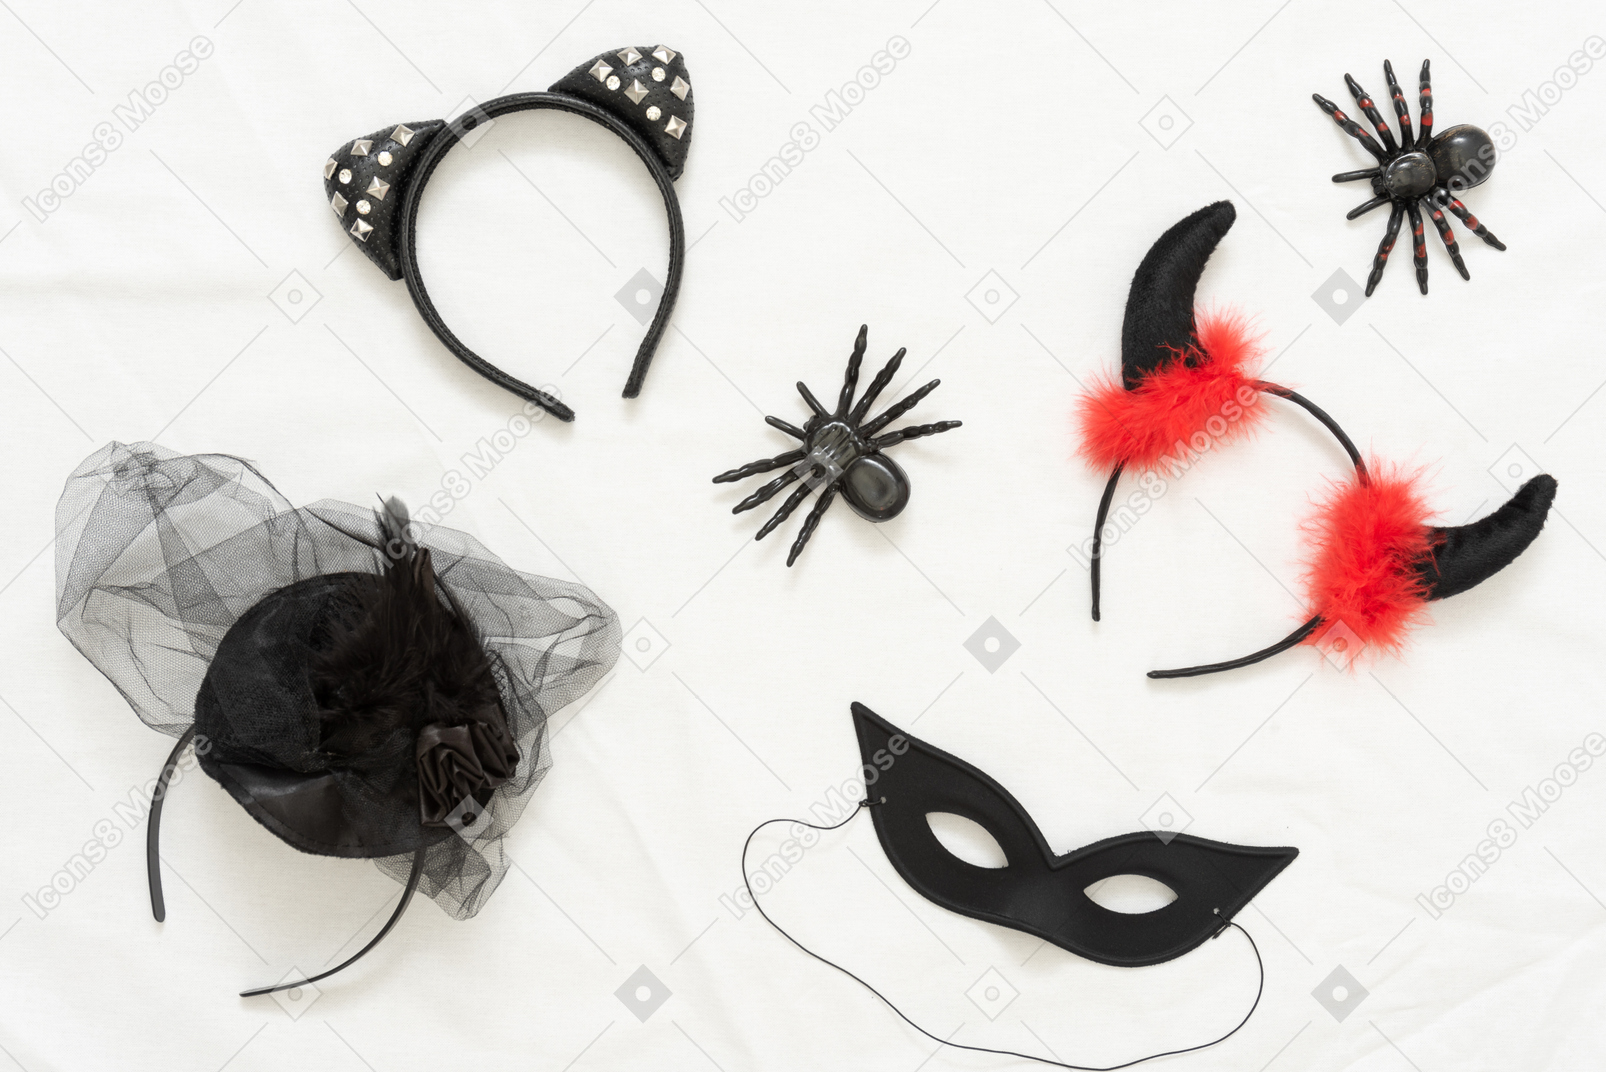 다른 할로윈 머리띠, 장난감 거미 및 검은 마스크